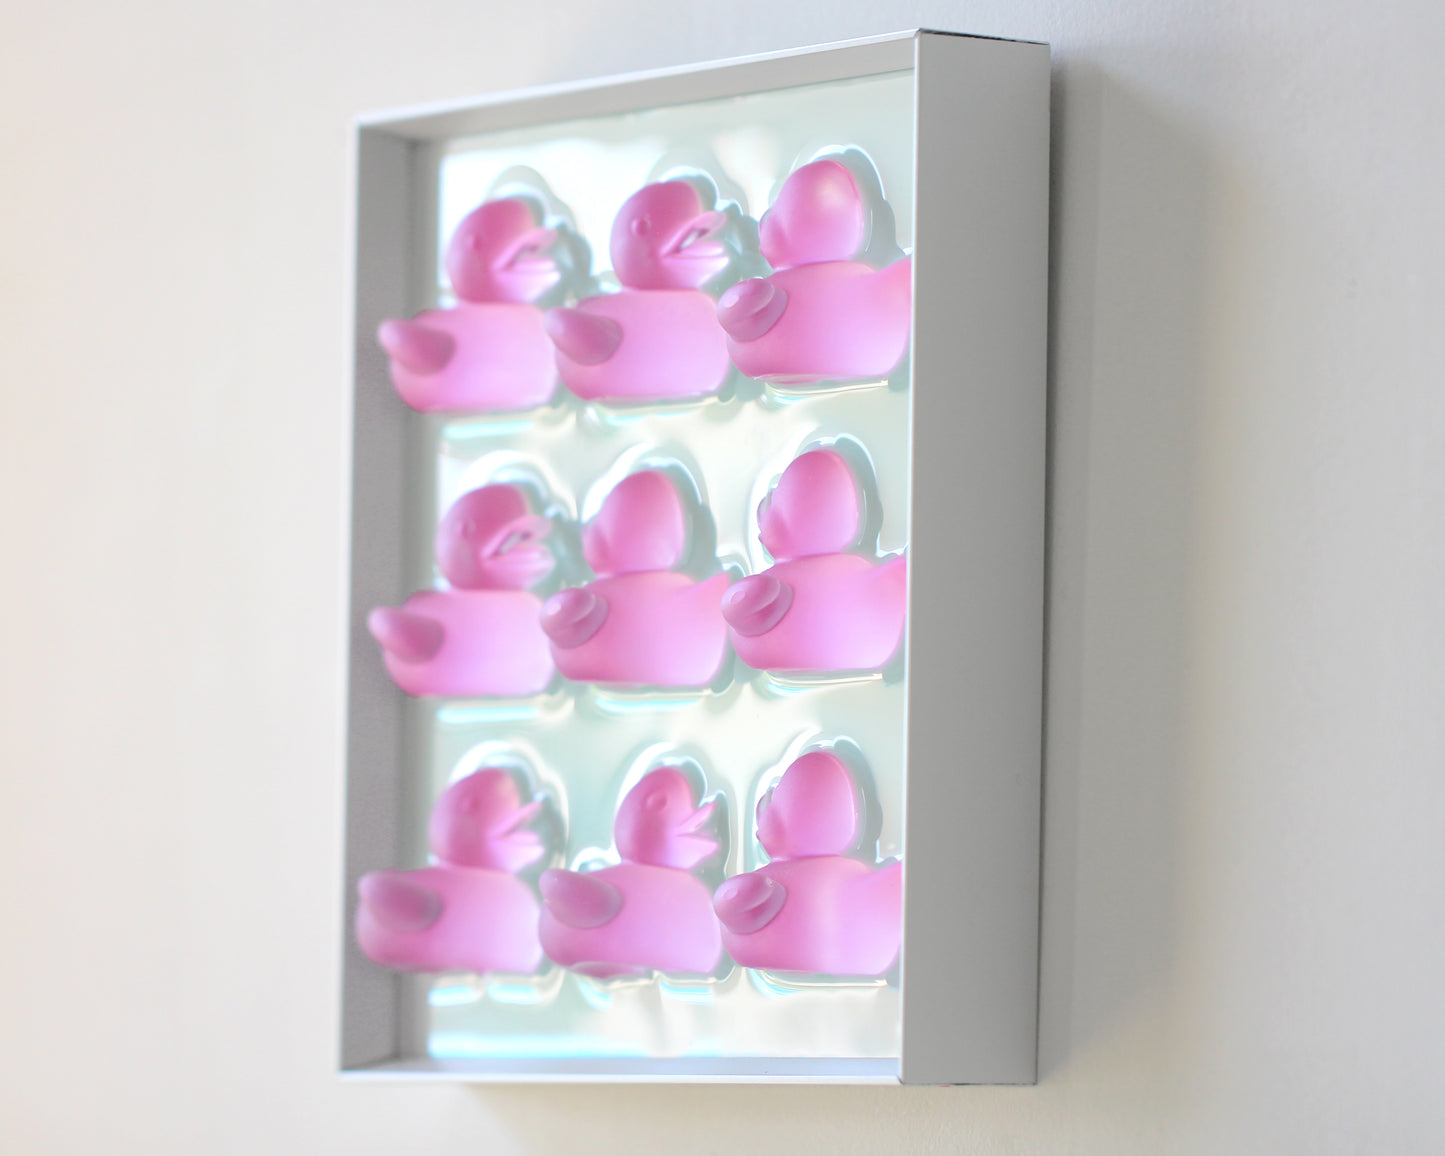 Wall Decor pop art of "Rubber ducks"